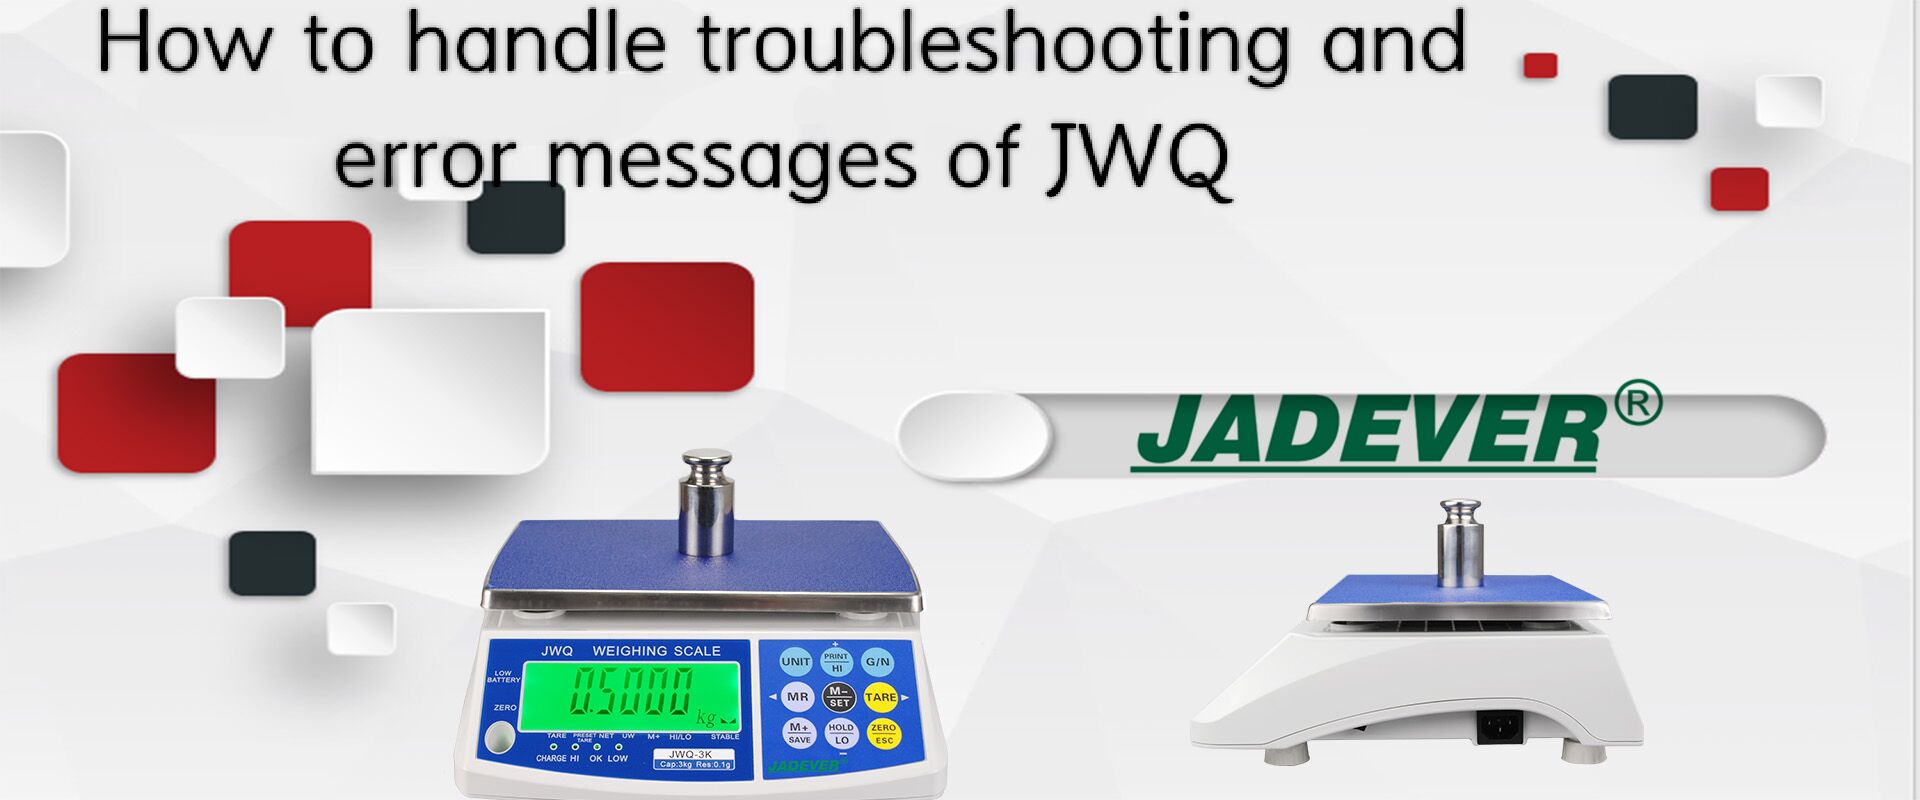 Làm thế nào để xử lý khắc phục sự cố và thông báo lỗi của JWQ?
